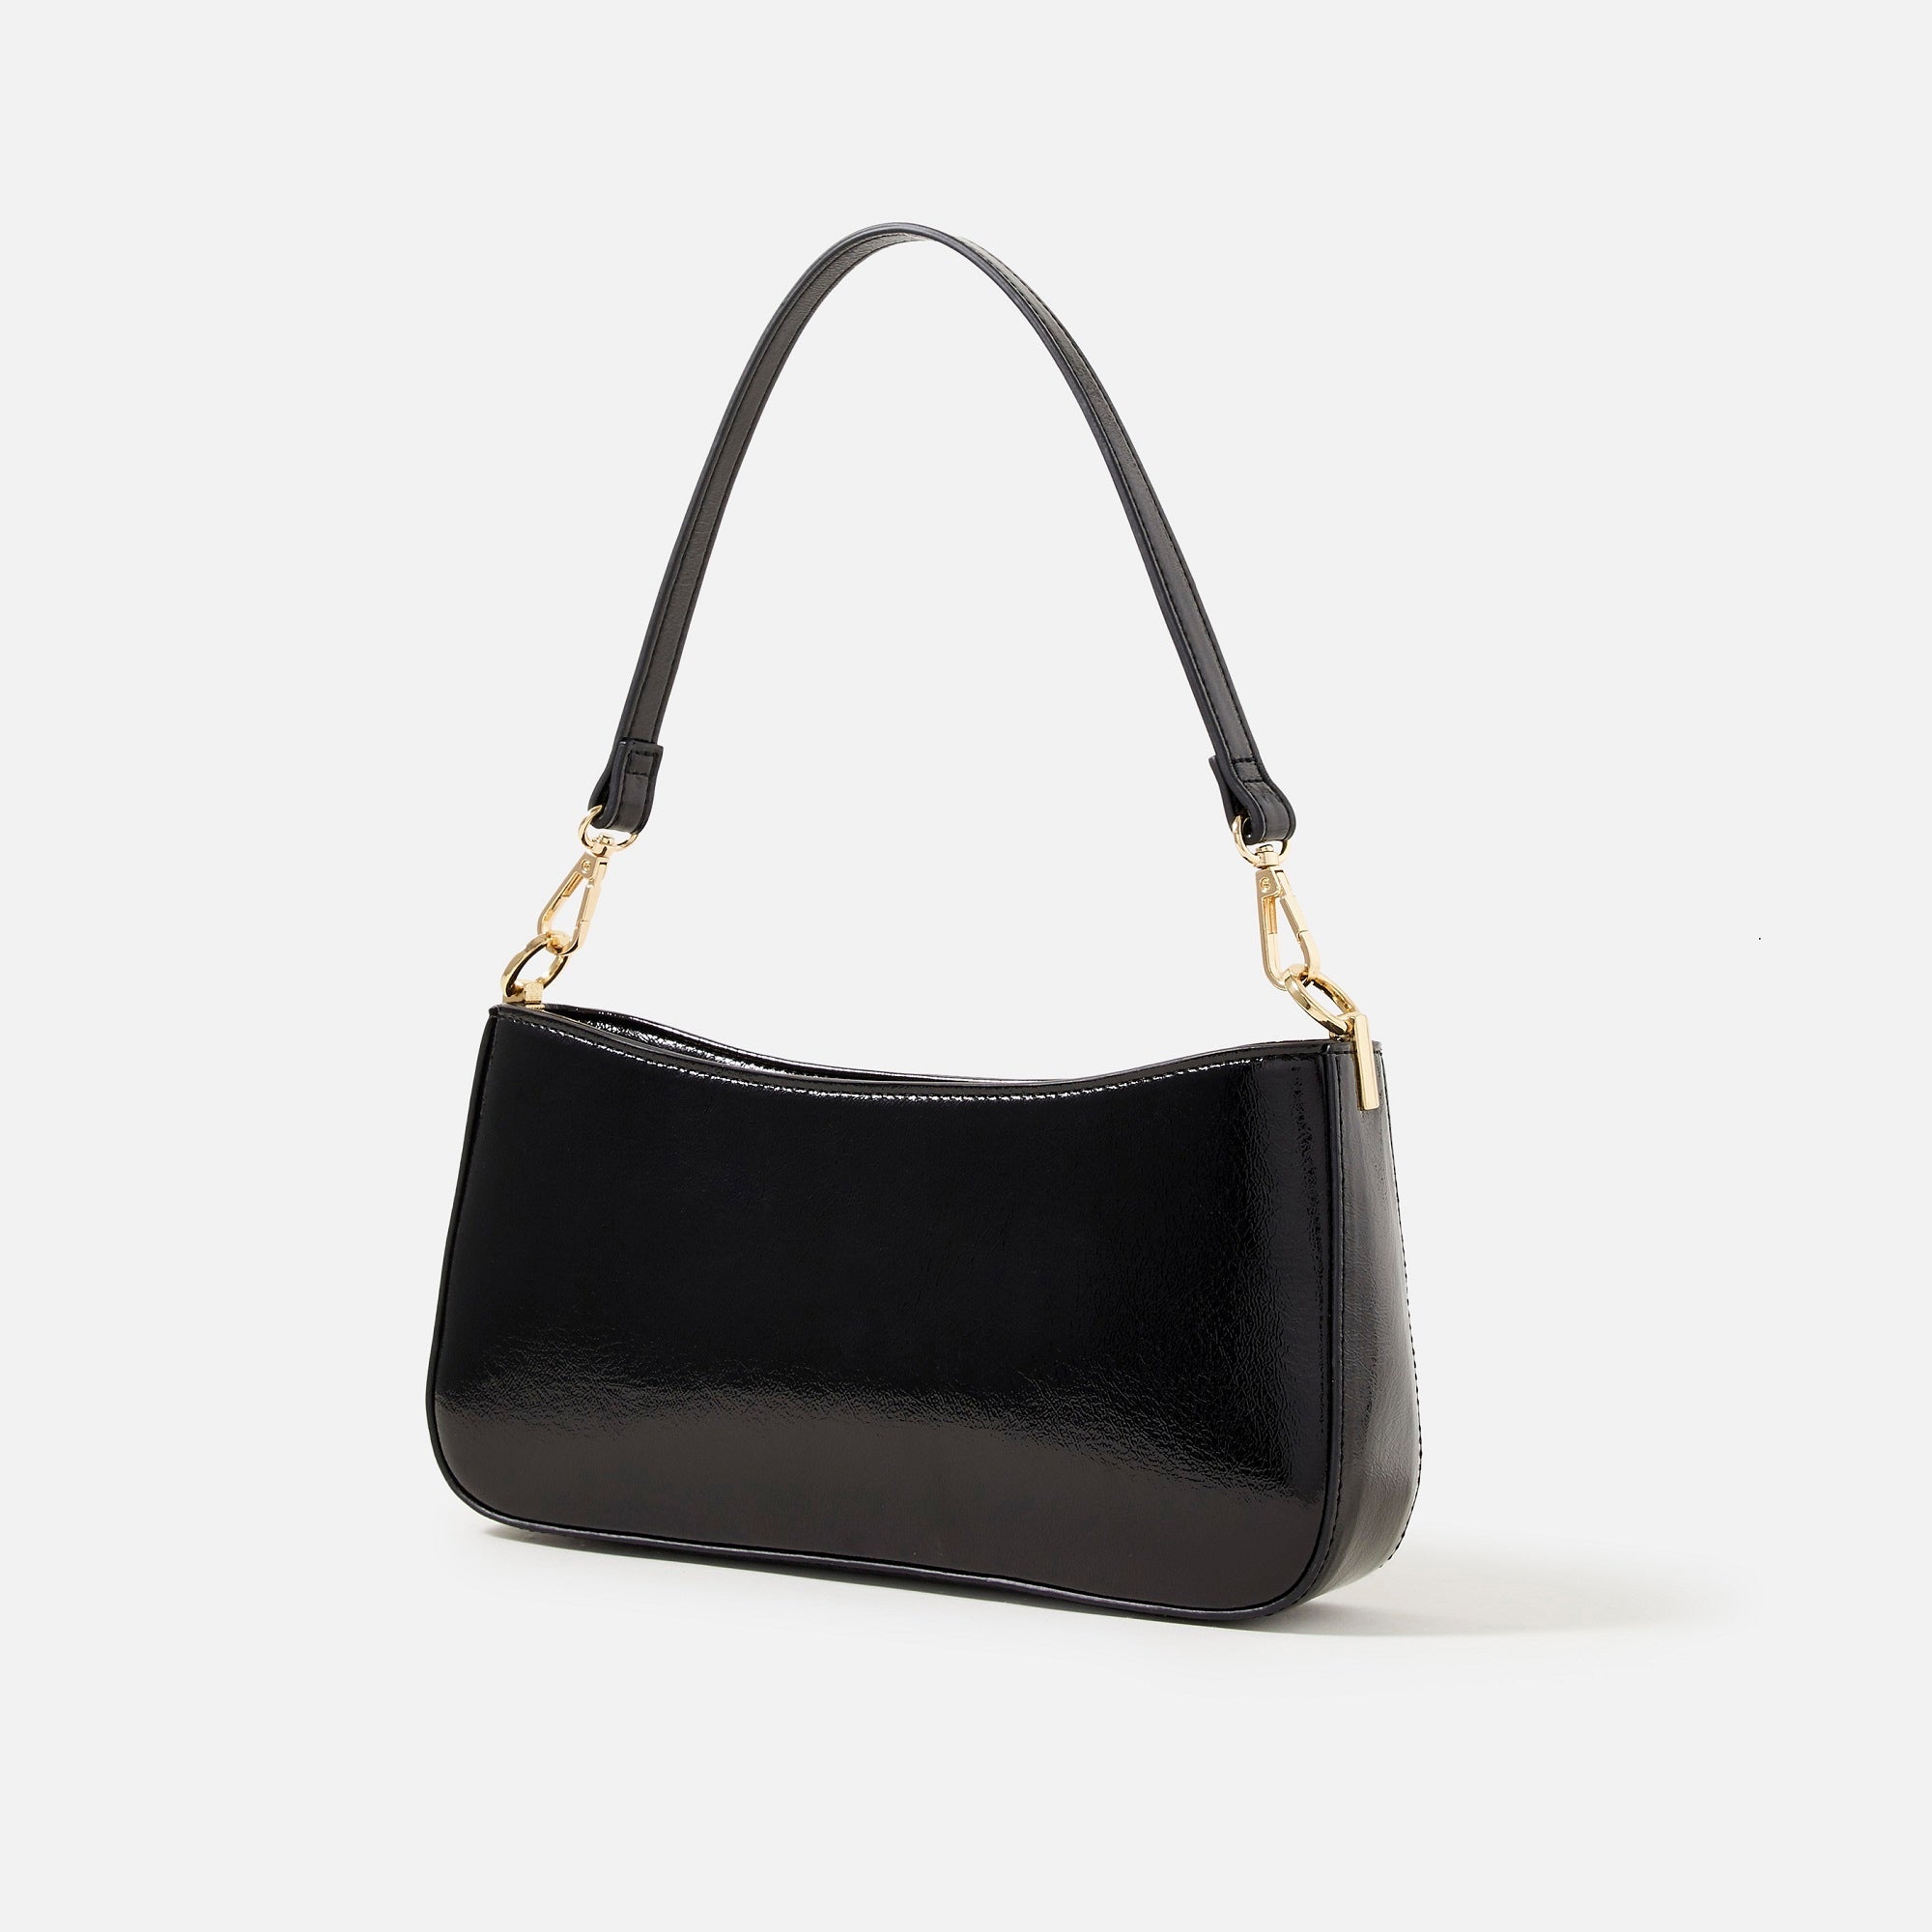 Accessorize London Women's Faux Leather Black Roxanne Shoulder Bag